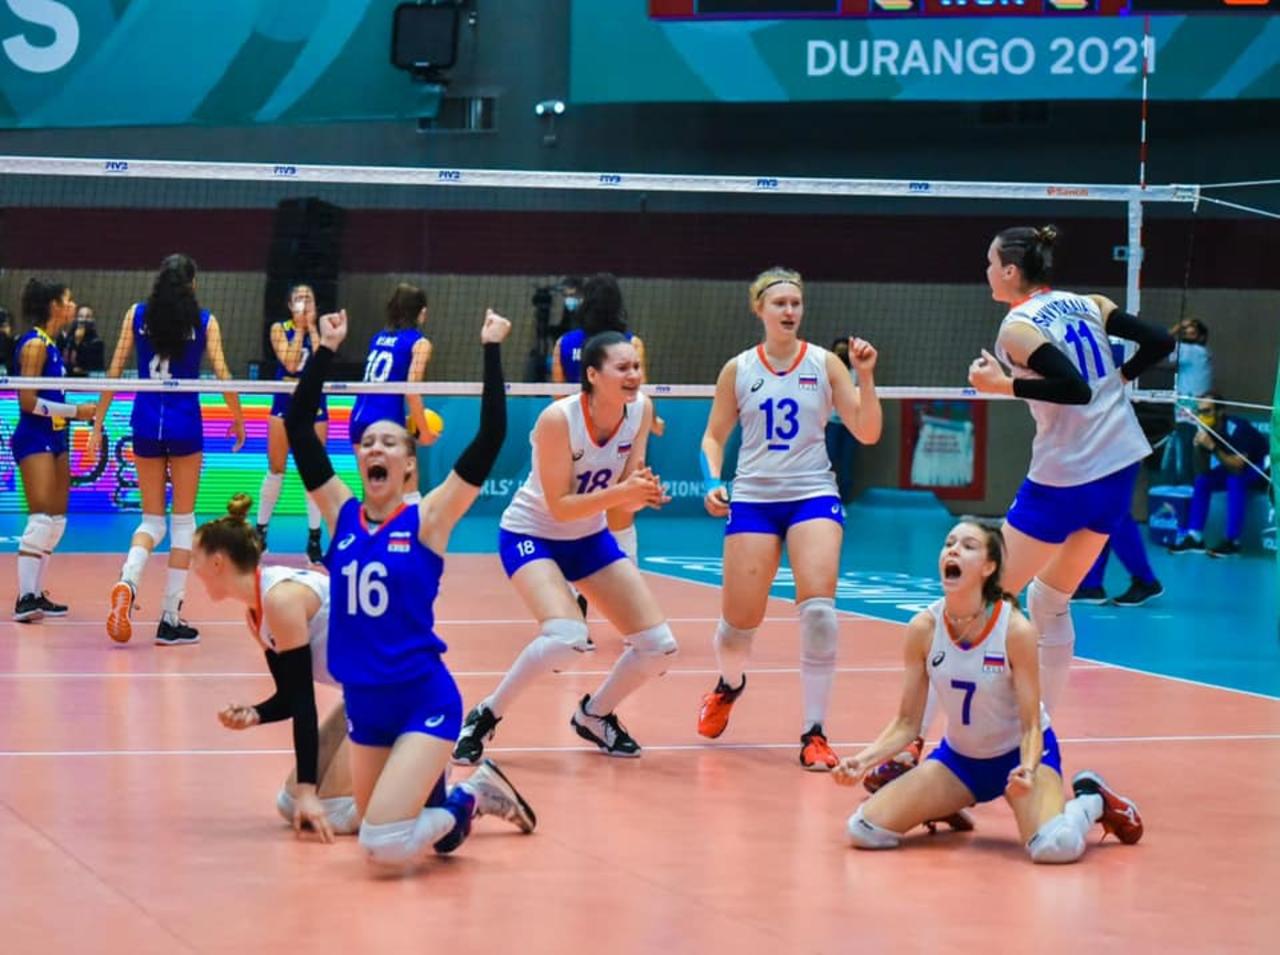 Partidazo entre Rusia y Brasil en mundial femenil de voleibol Sub-18 en Durango